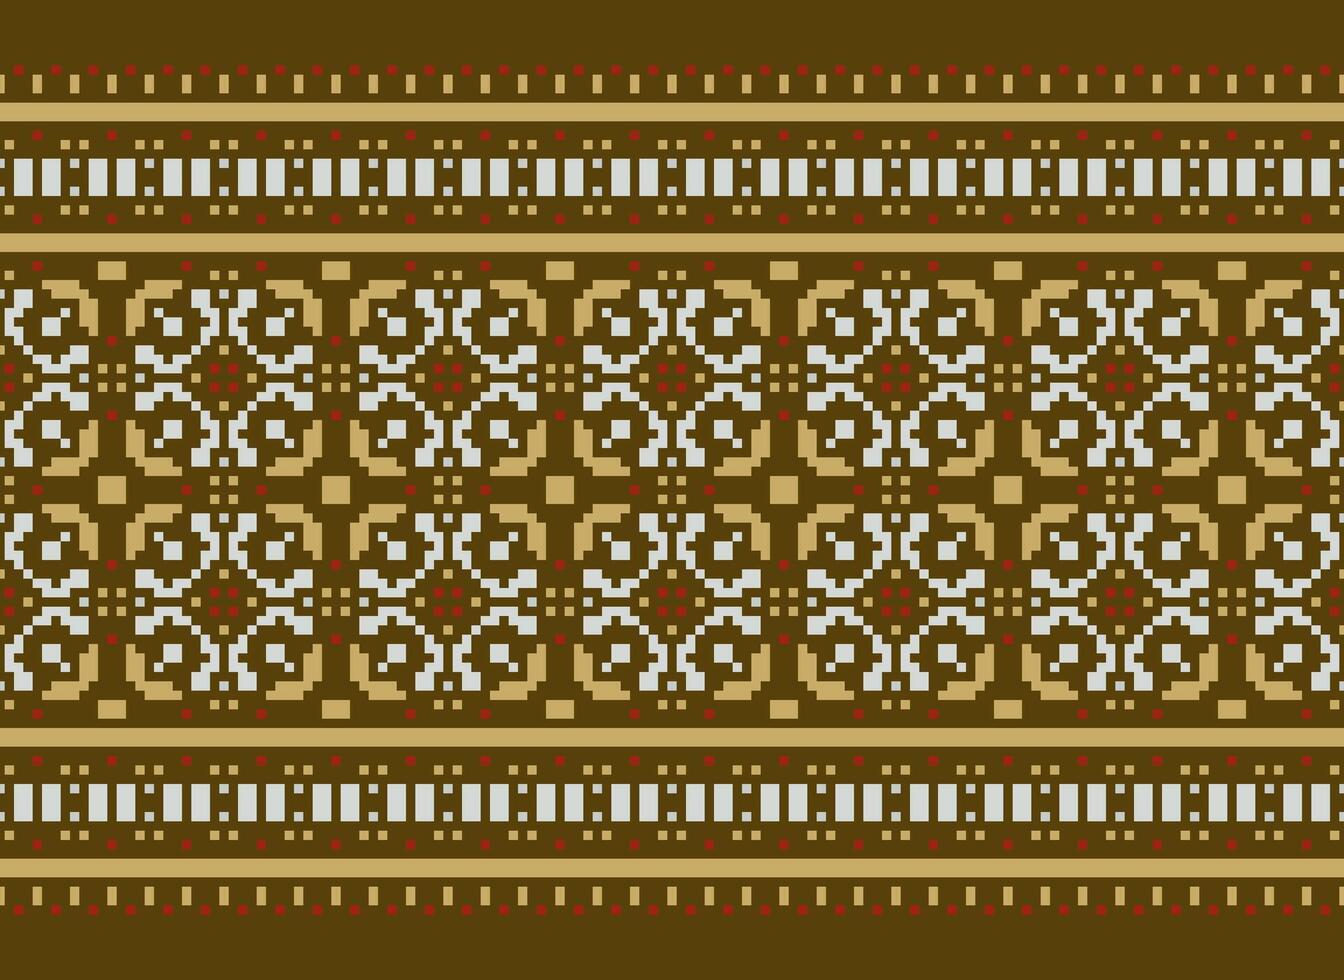 zmijanjski vez bordado estilo vetor grandes horizontal desatado padronizar - têxtil ou tecido impressão inspirado de ponto de cruz folk arte desenhos a partir de Bósnia e herzegovina